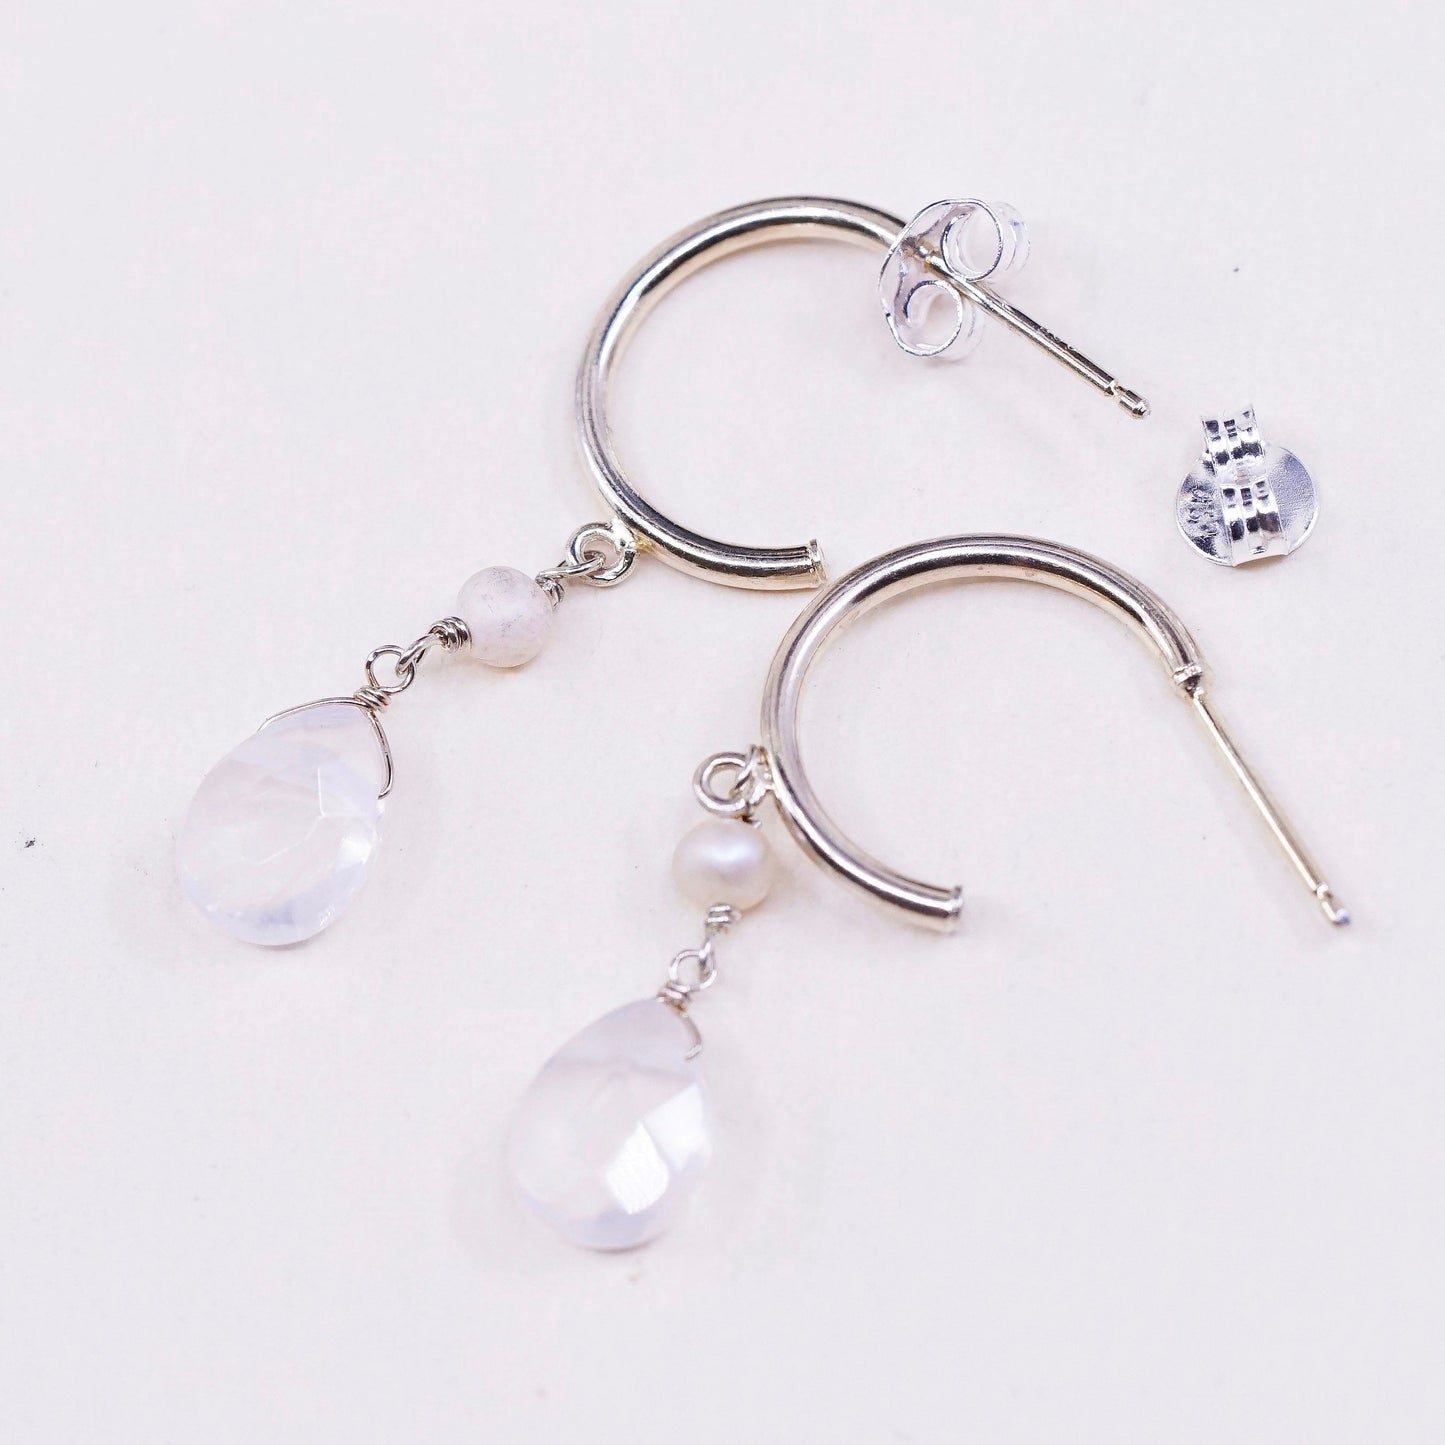 0.5”, vtg light gold sterling silver loop earrings, minimalist primitive hoops